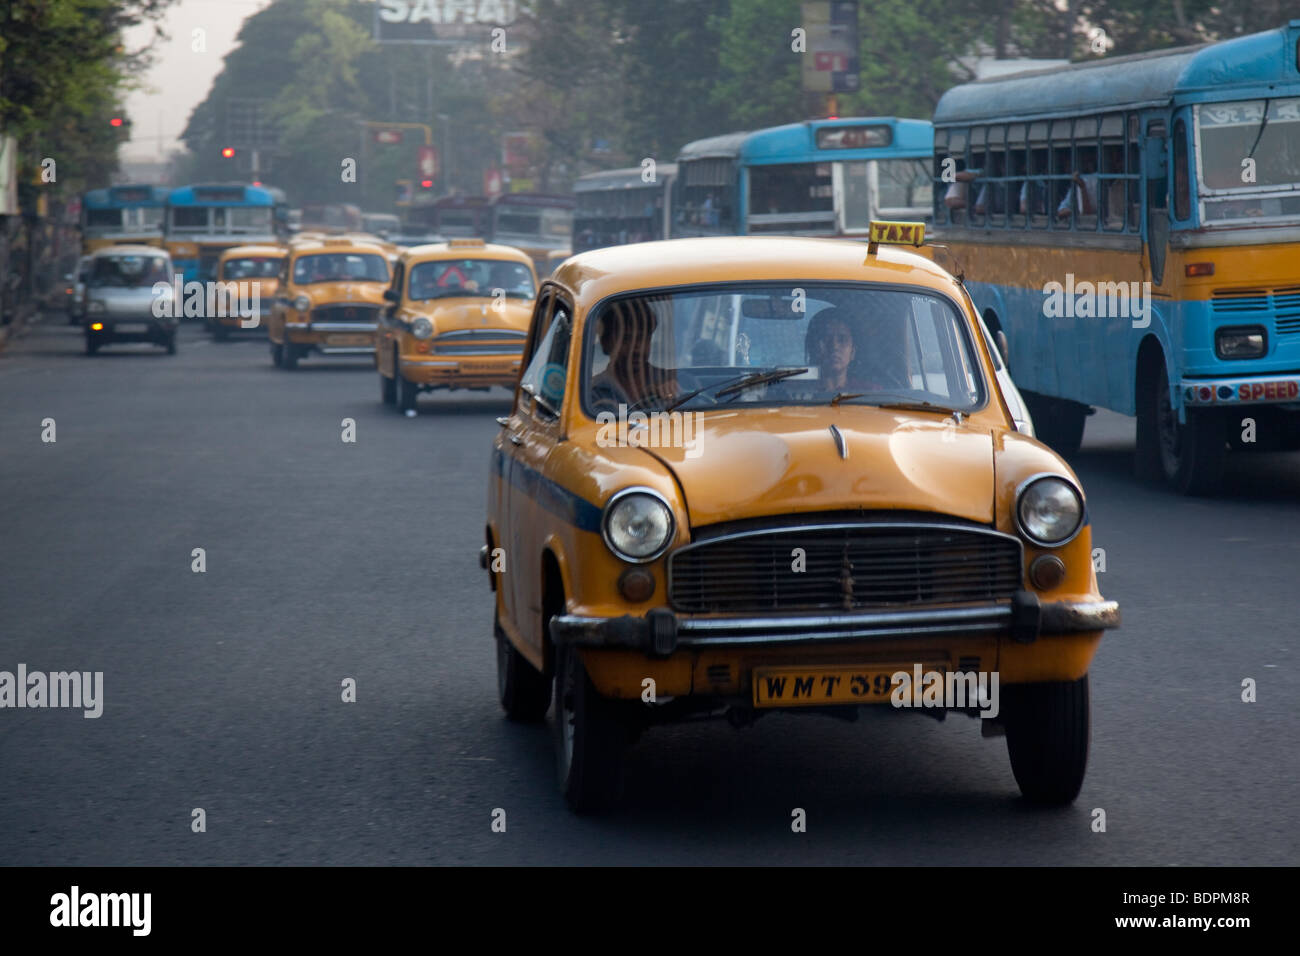 Taxi in Calcutta India Stock Photo